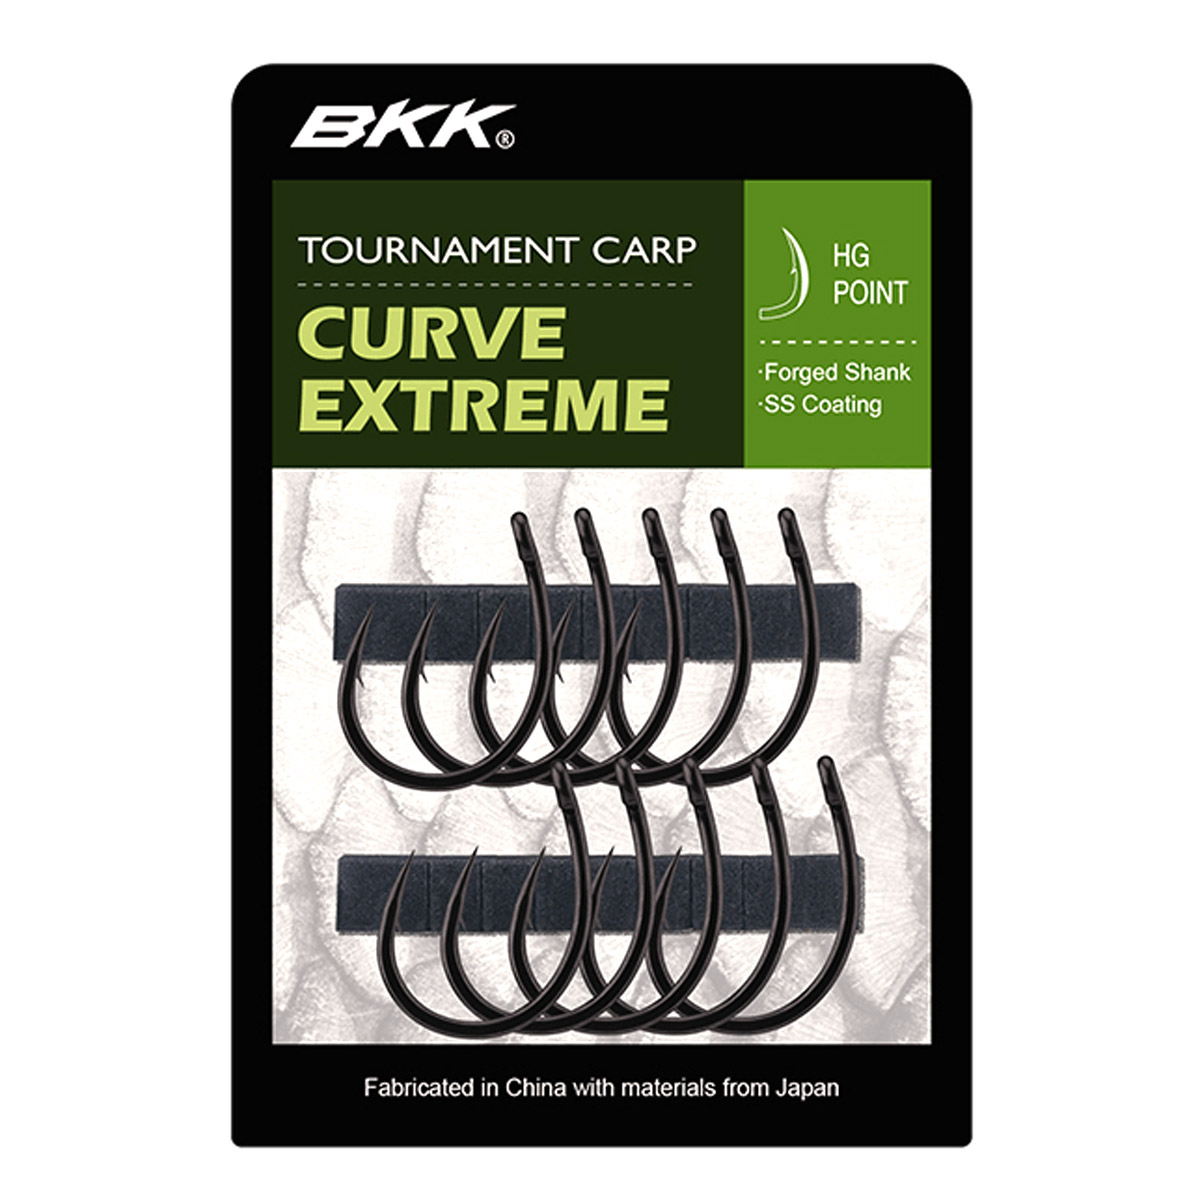 BKK Tournament Carp Curve Extreme Hooks